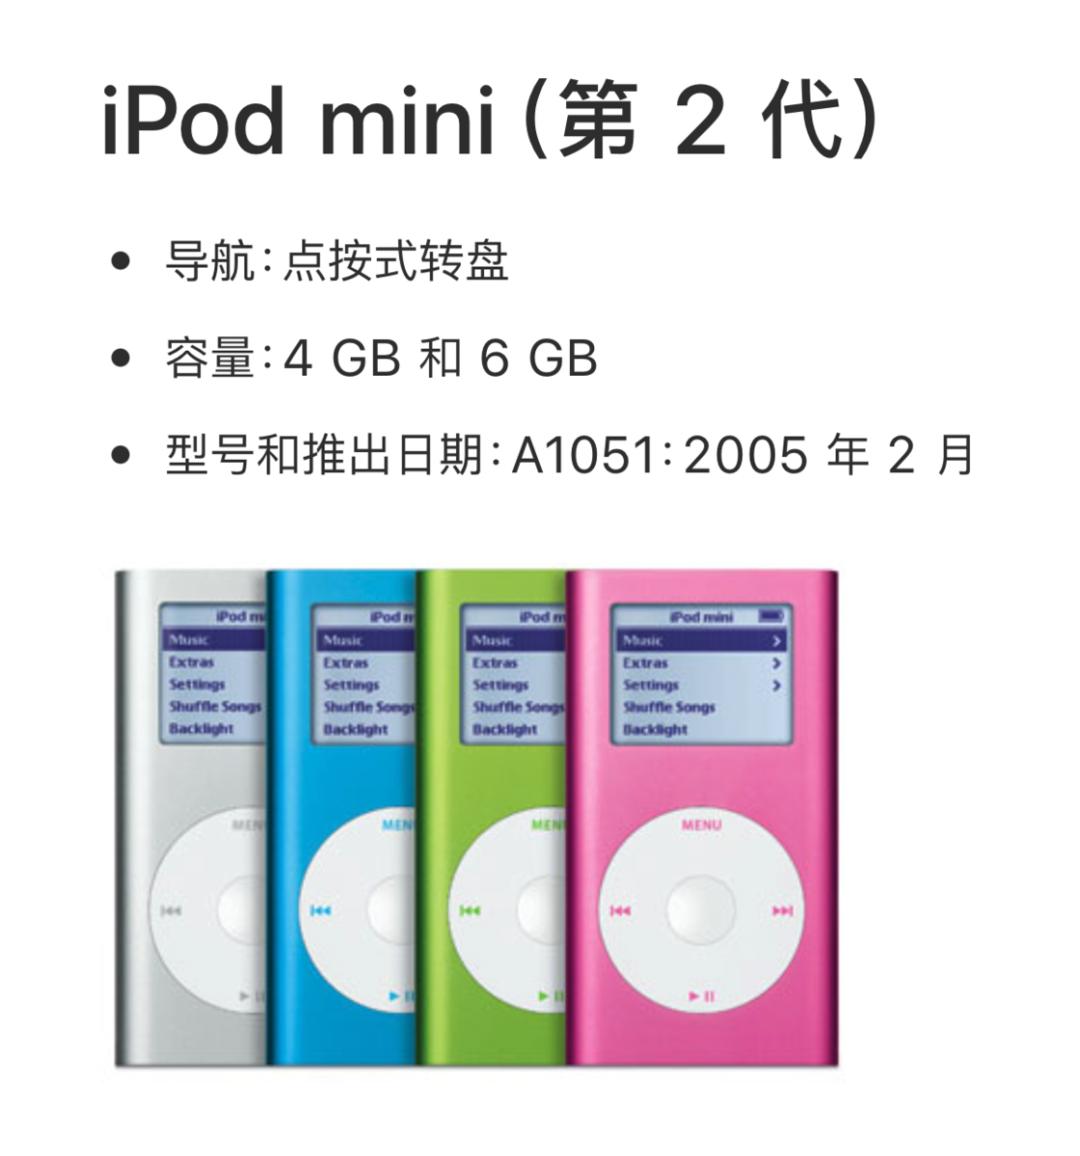 苹果停产最后一台iPod，热卖20年的它究竟有怎样的魔力？-36氪